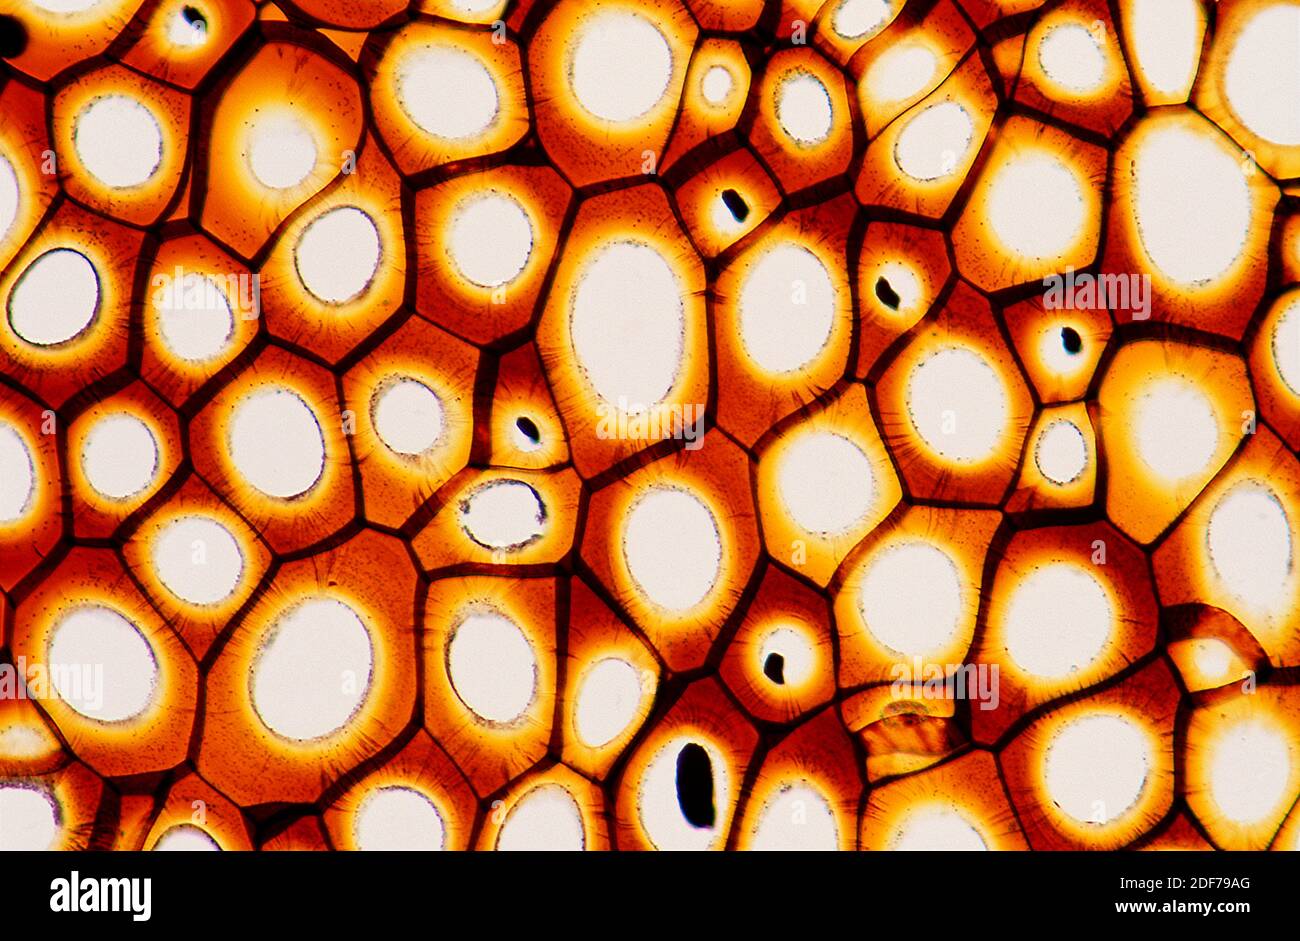 Los plasmodesmatas son túbulos microscópicos que interconectan las células. Fotomicrografía. Foto de stock